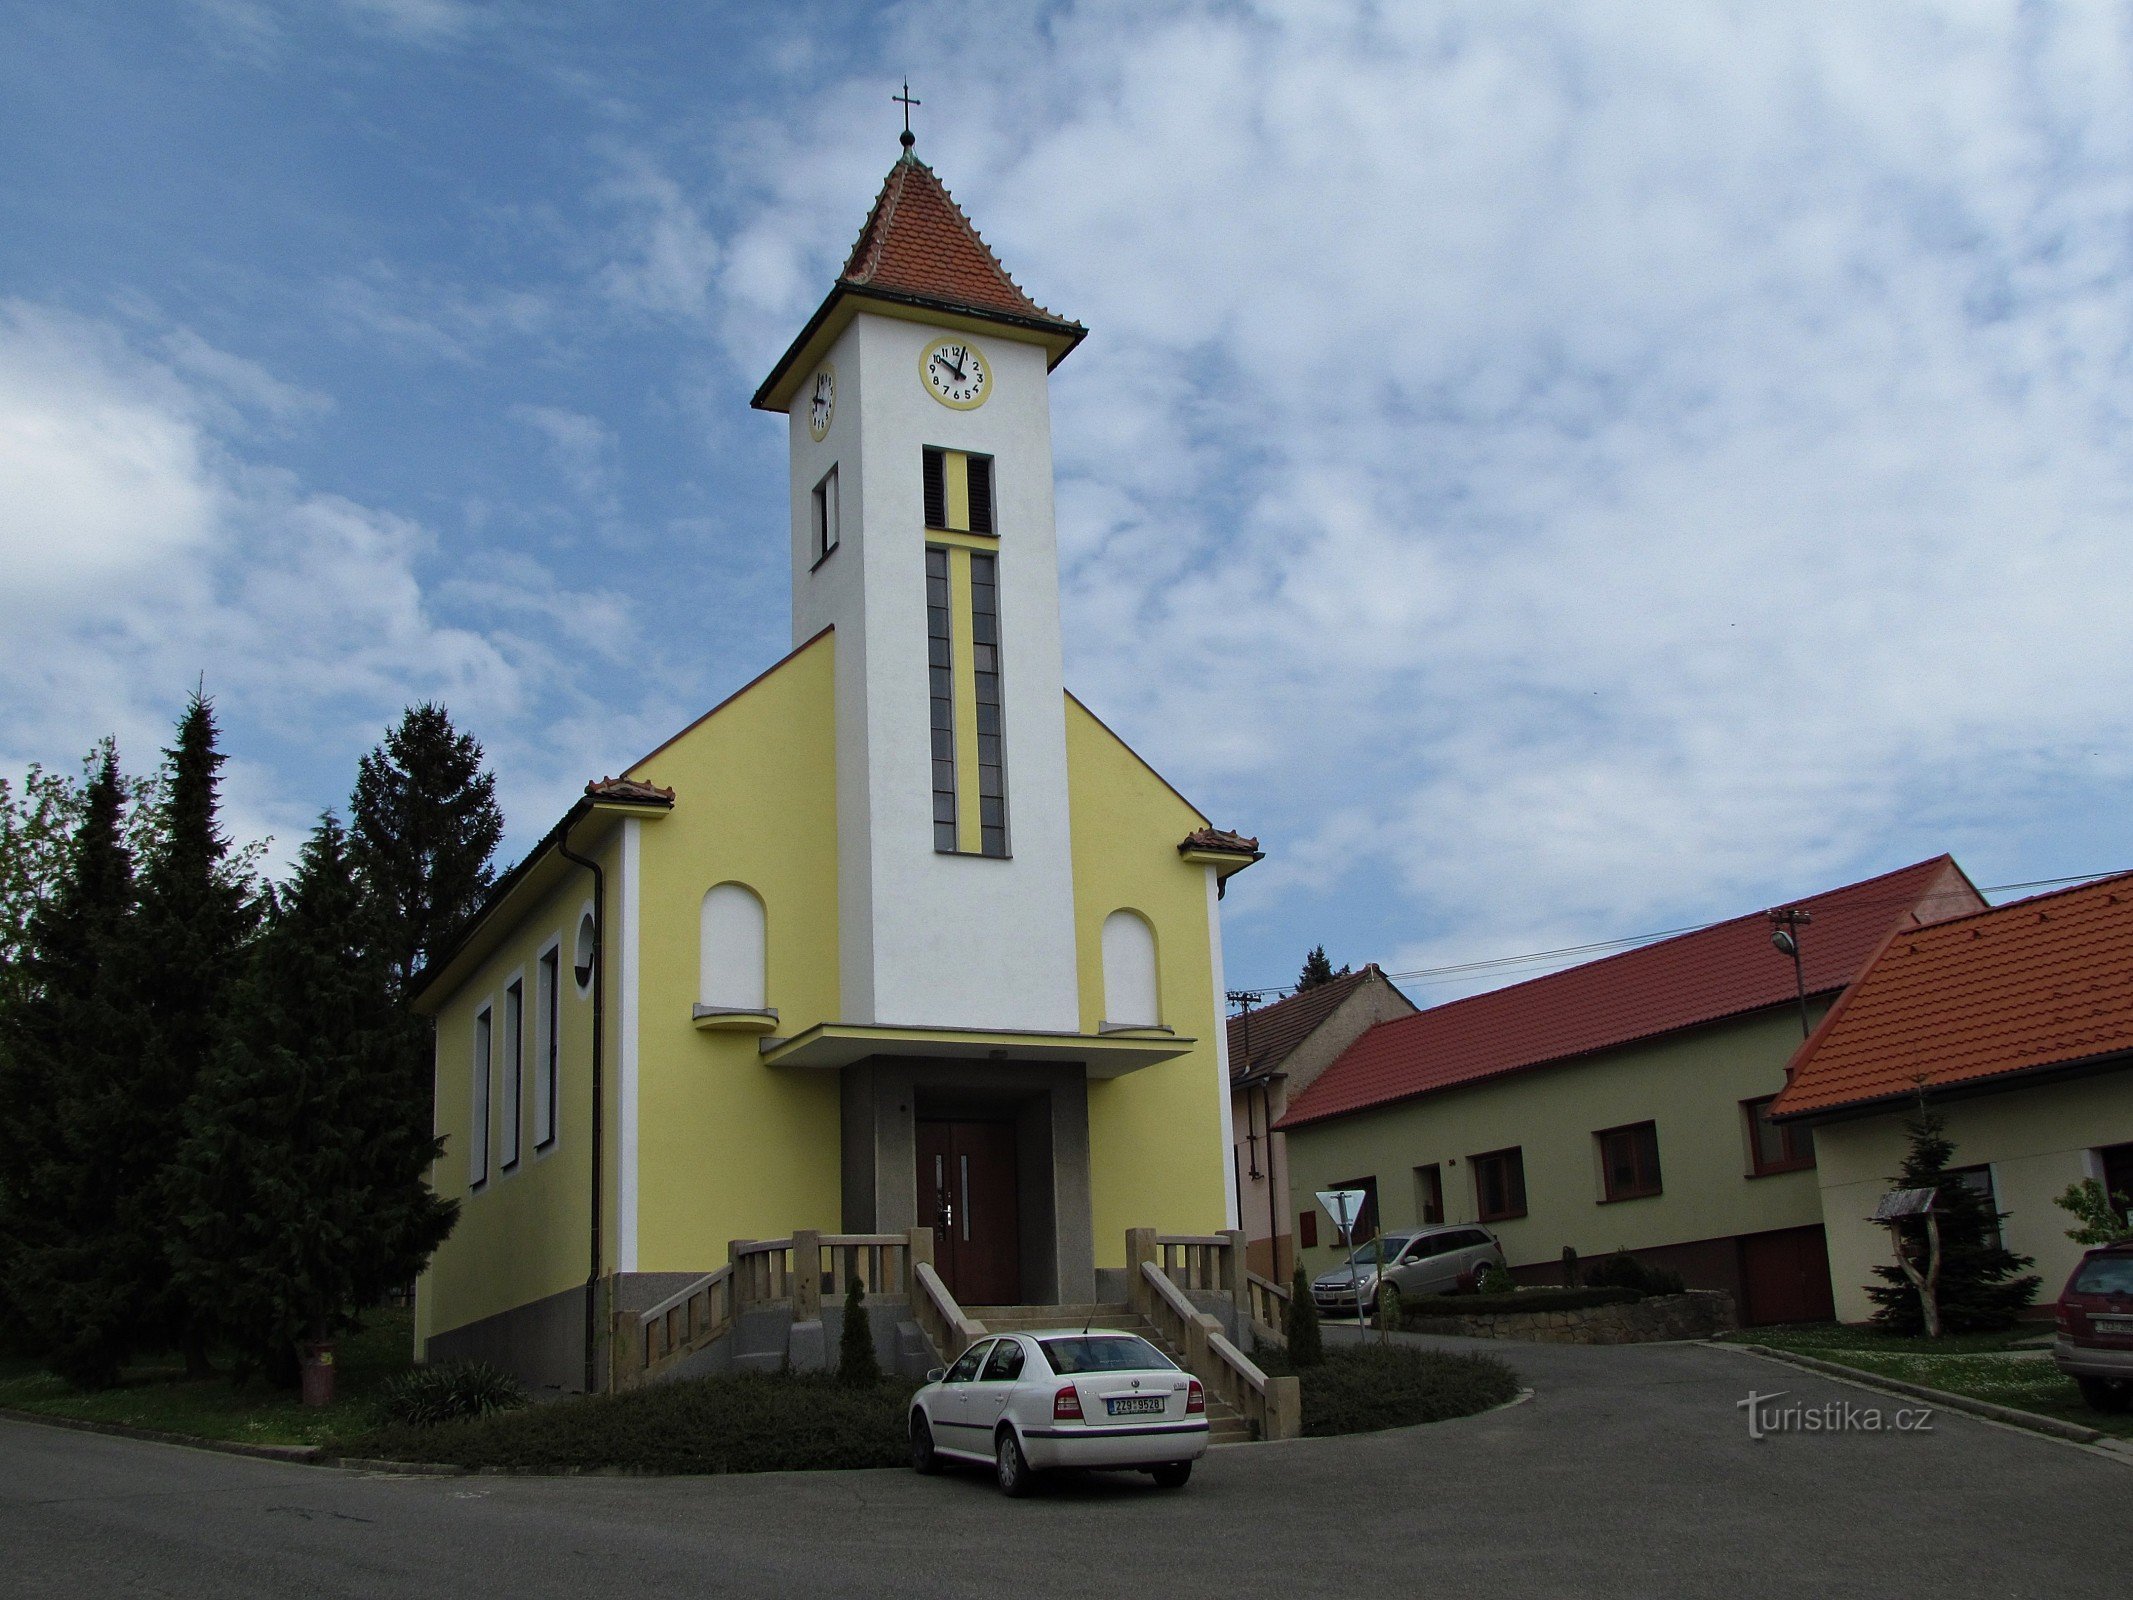 Жлутава - церковь св. Кирилл и Мефодий